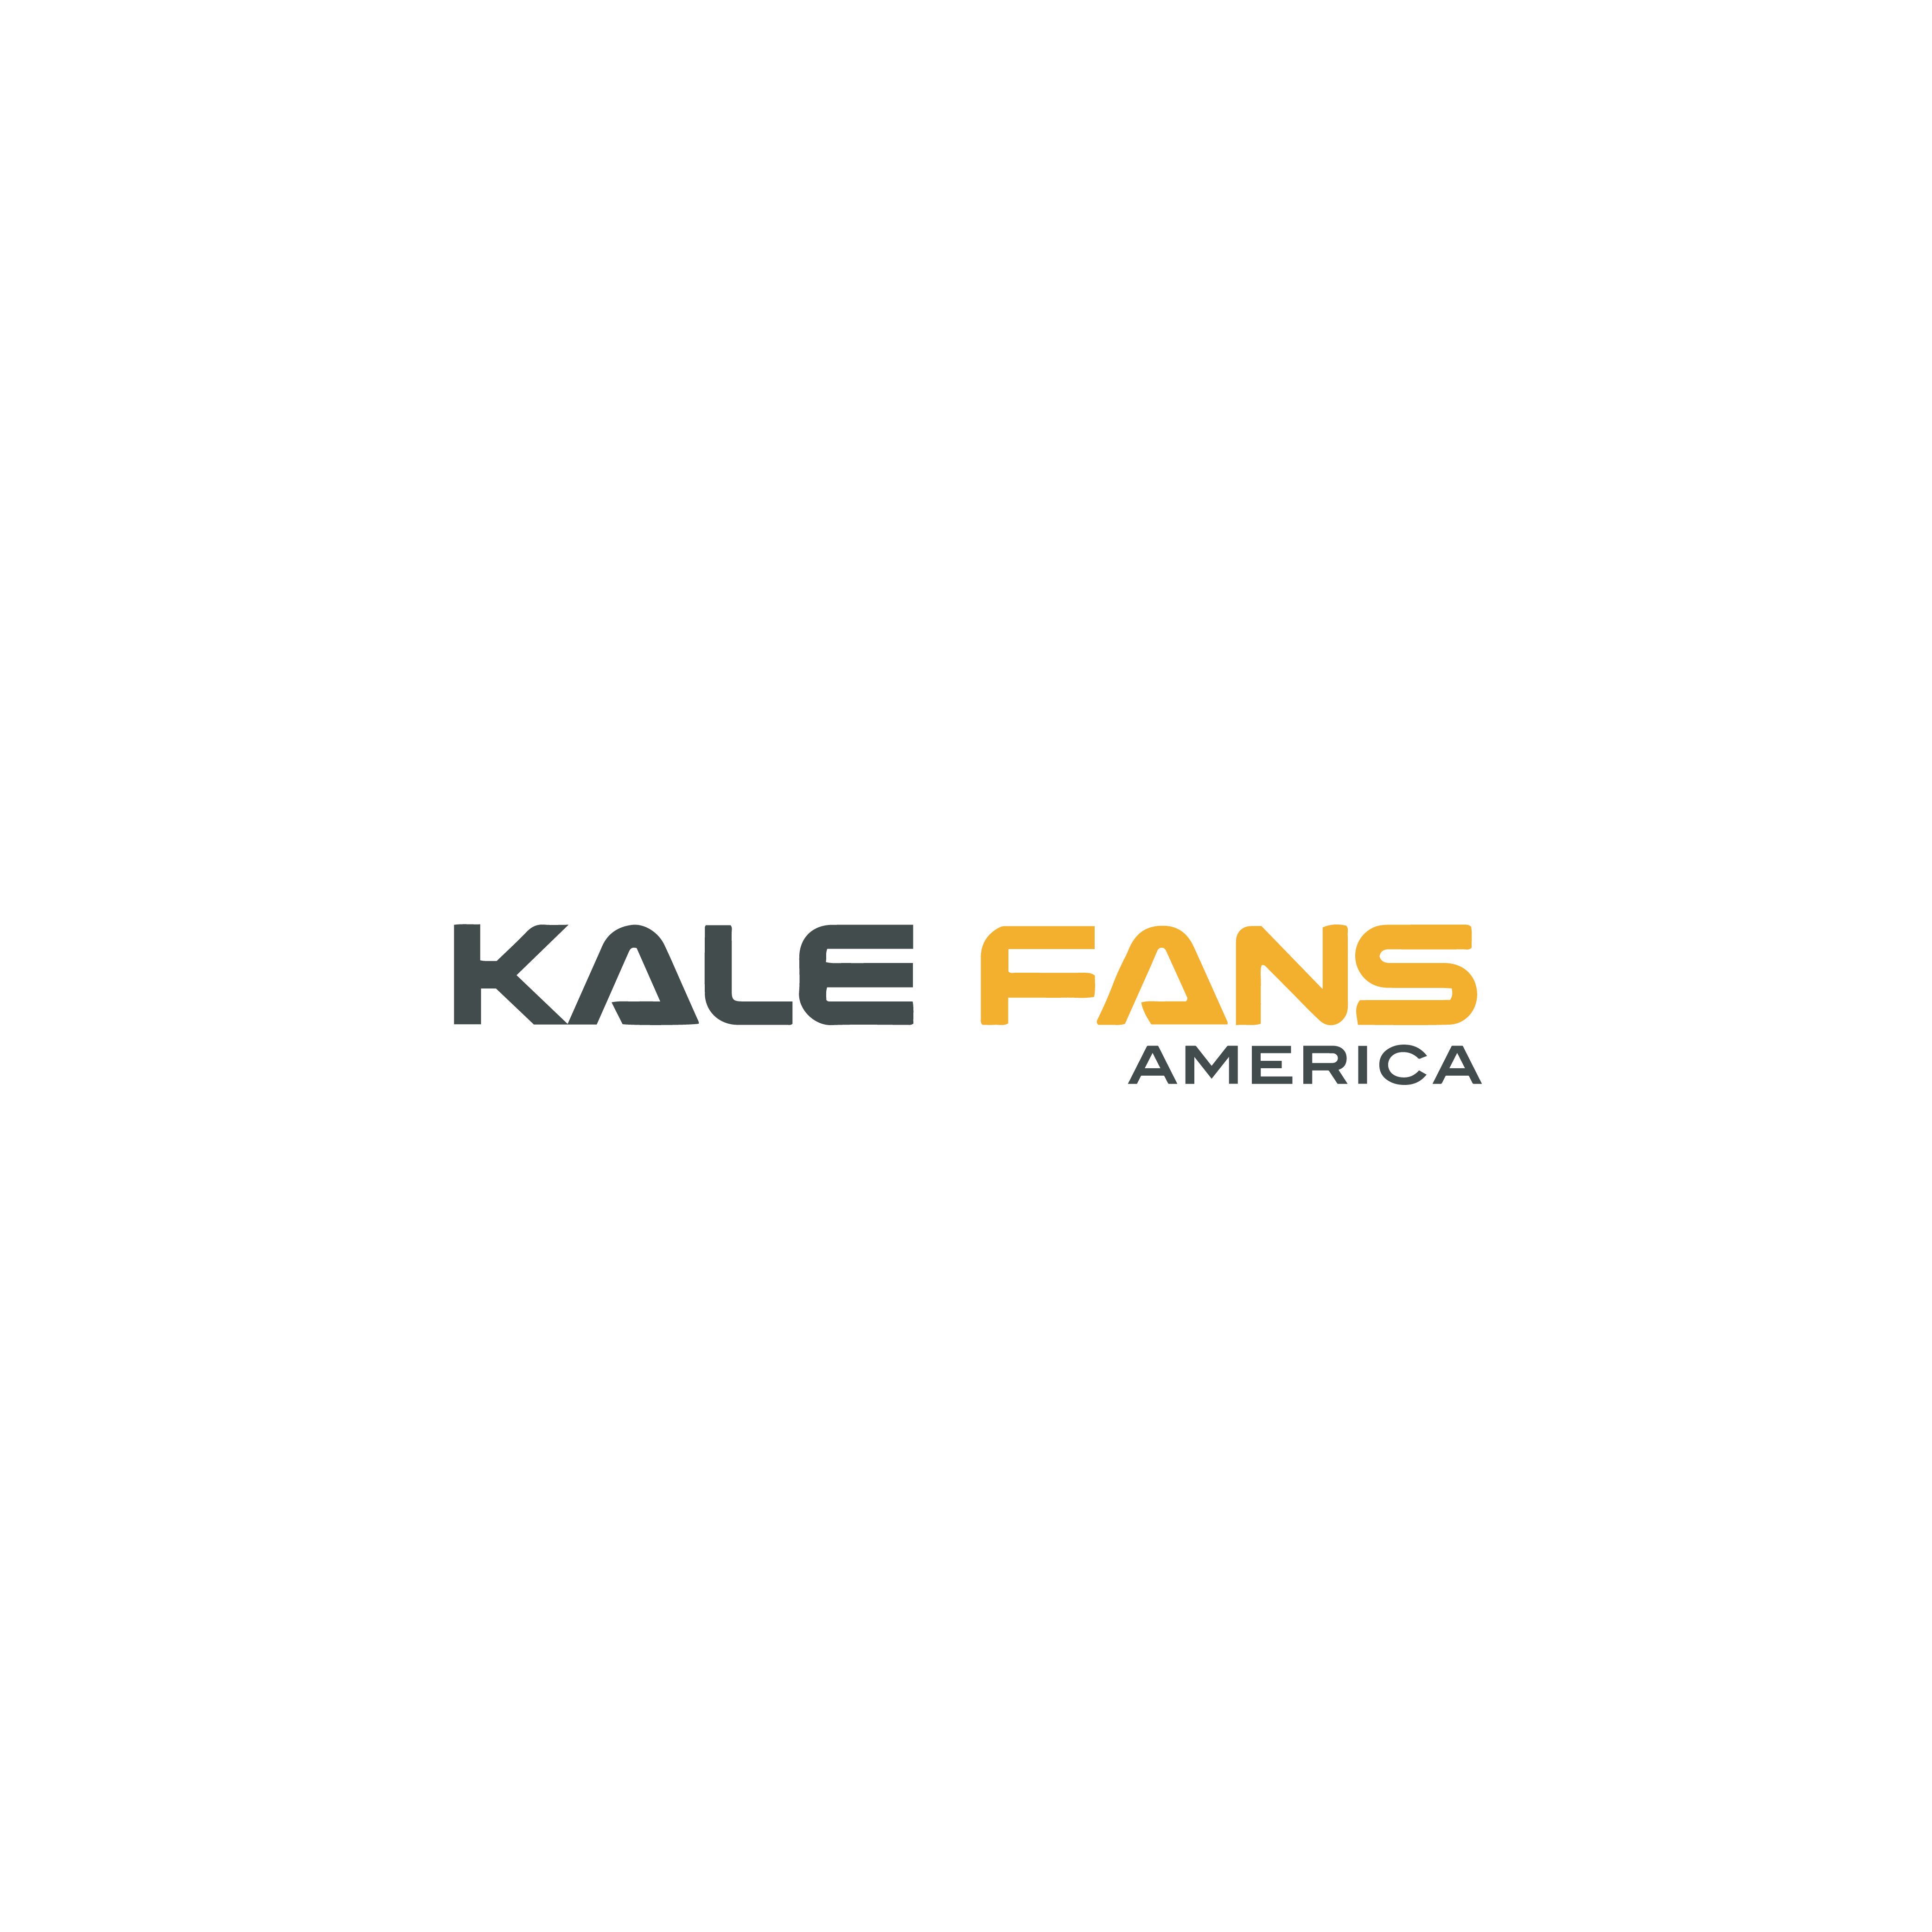 Kale Fans America